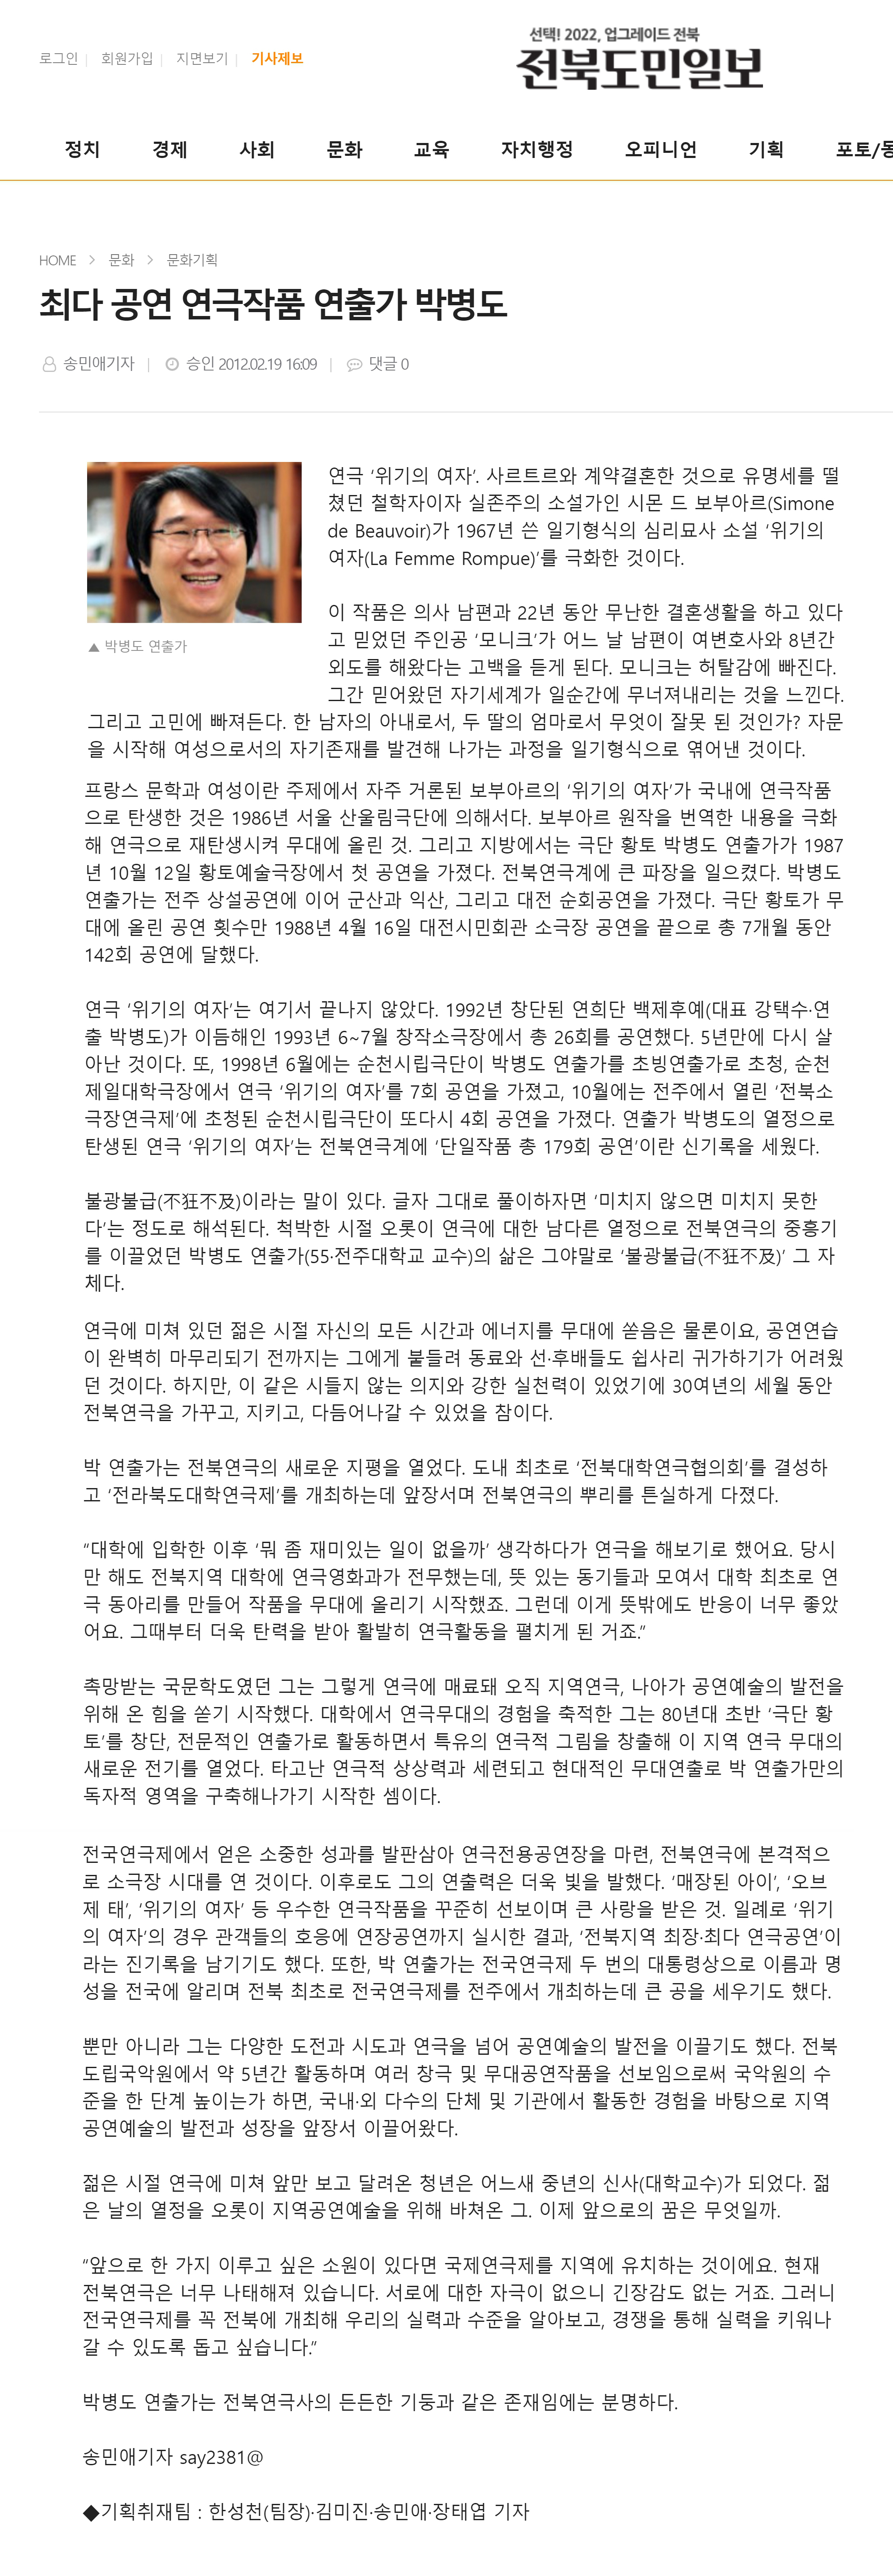 최다공연-박병도-전북도민일보.jpg